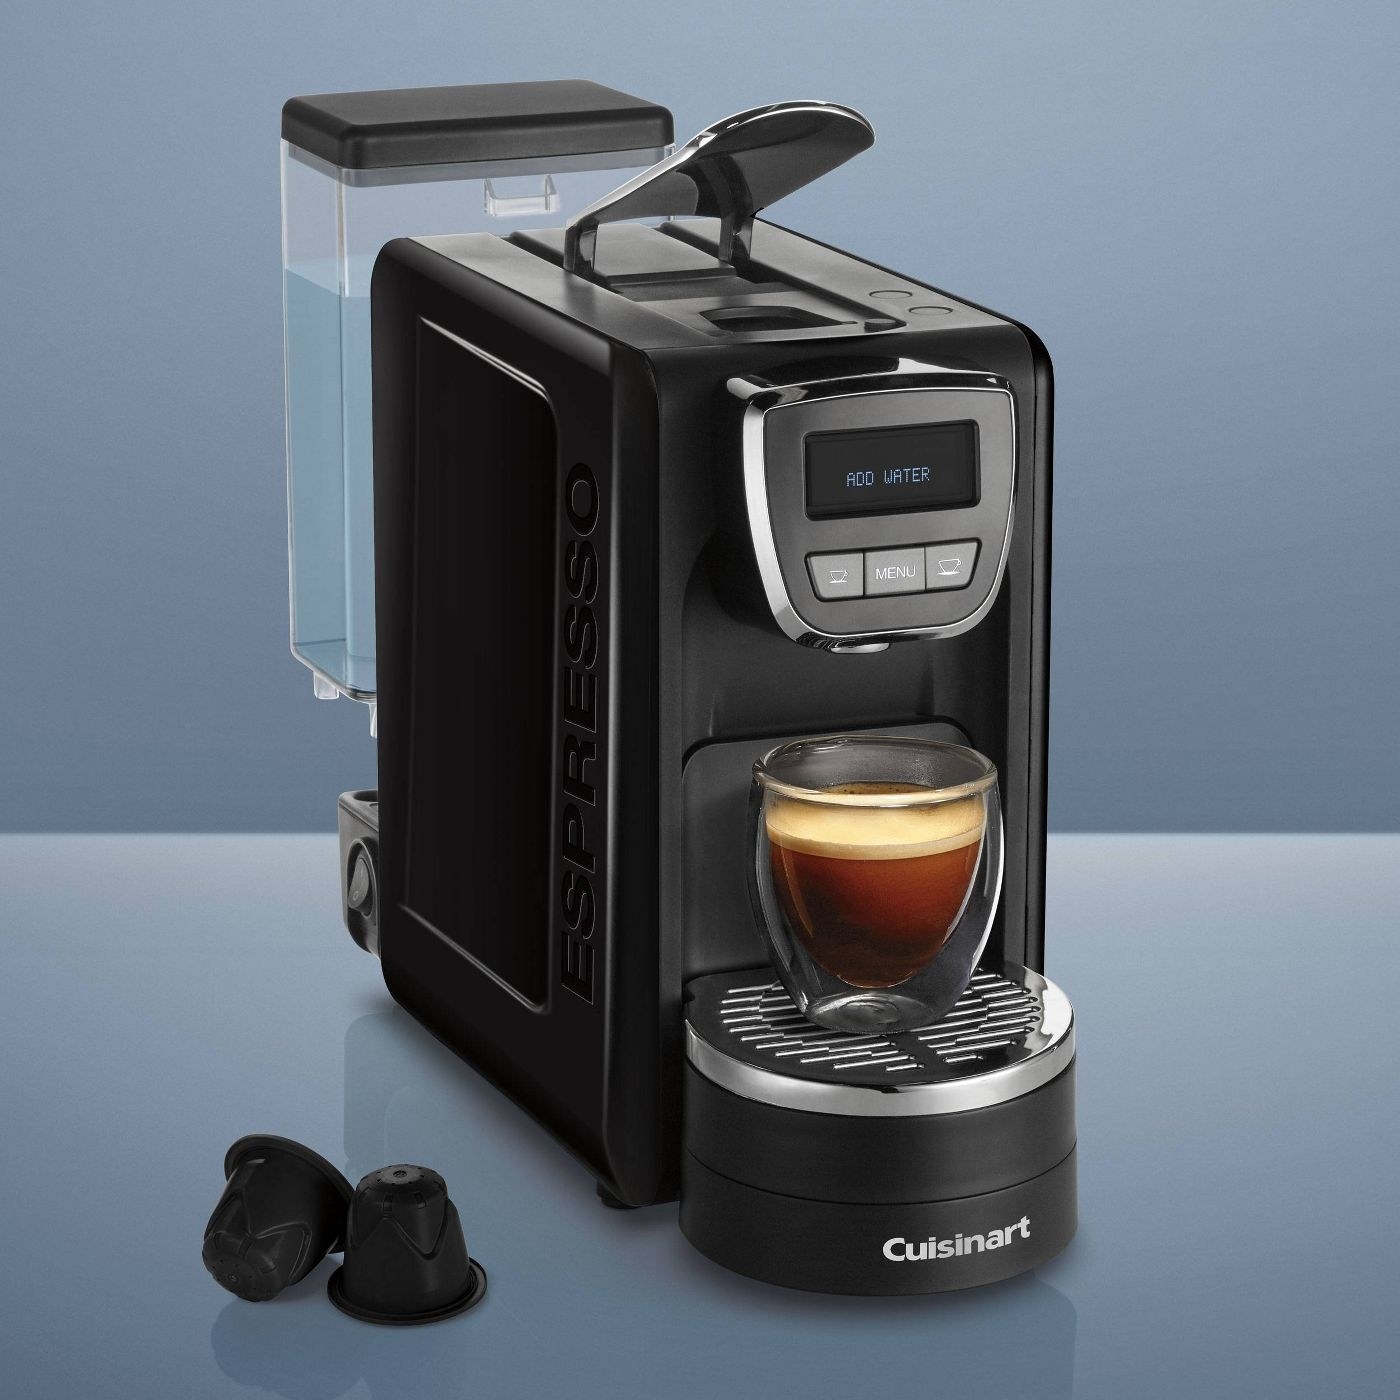 The espresso machine